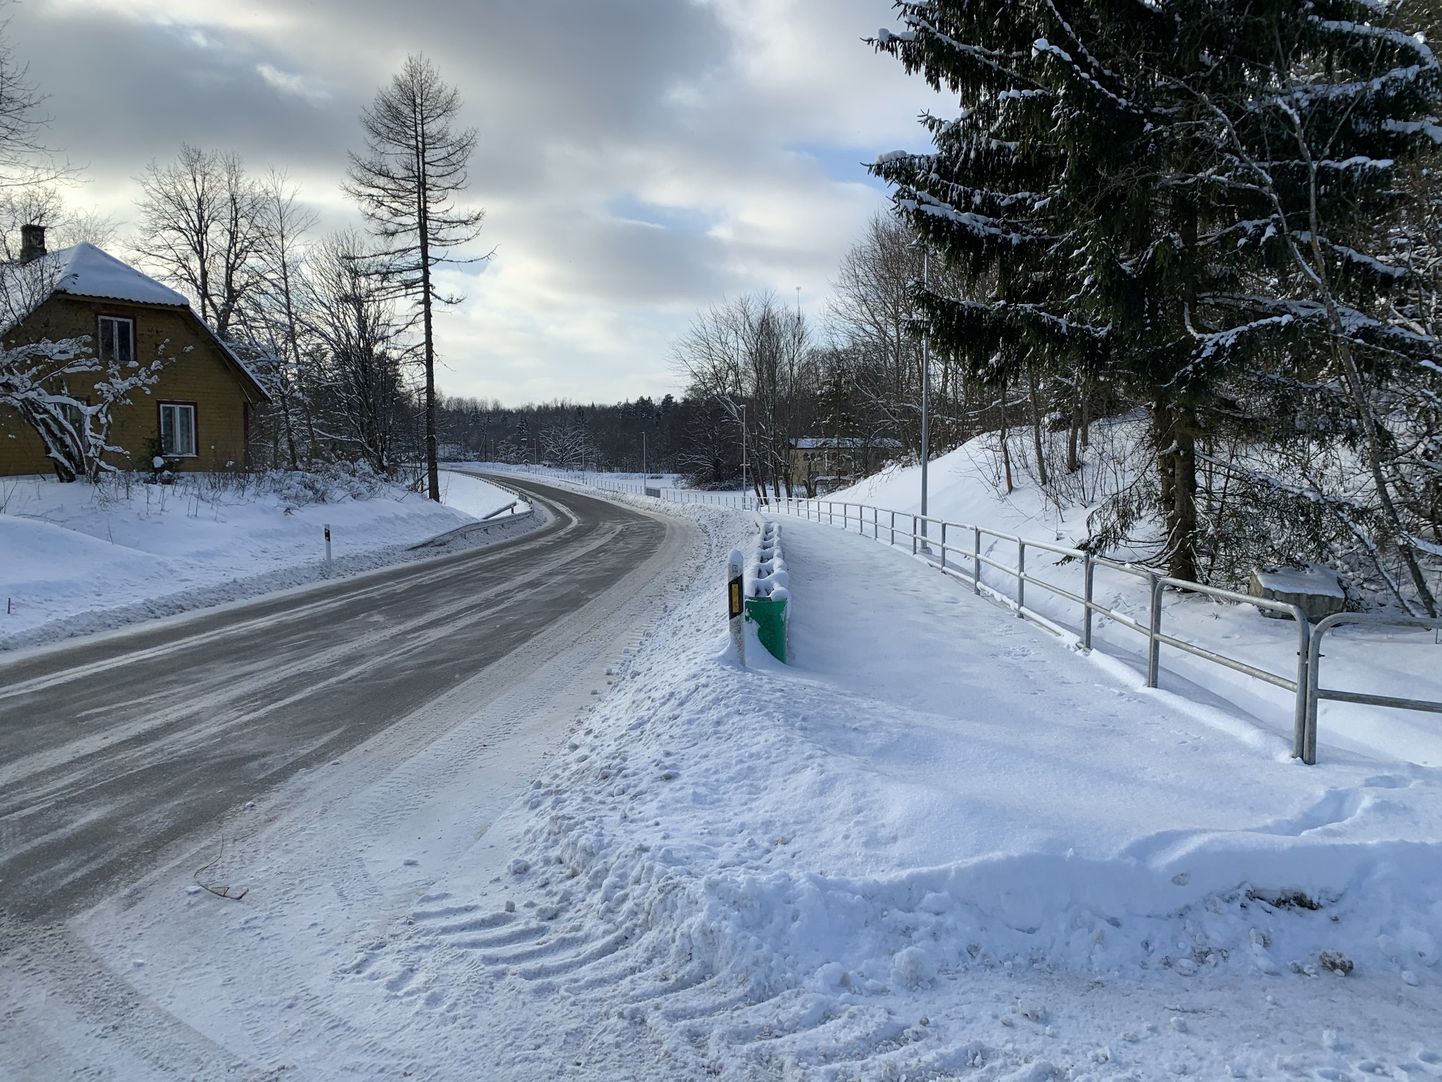 Kõnealune kõnnitee Tõrva vallas Soontaga külas. Pilt on tehtud 4. veebruari lõuna paiku.